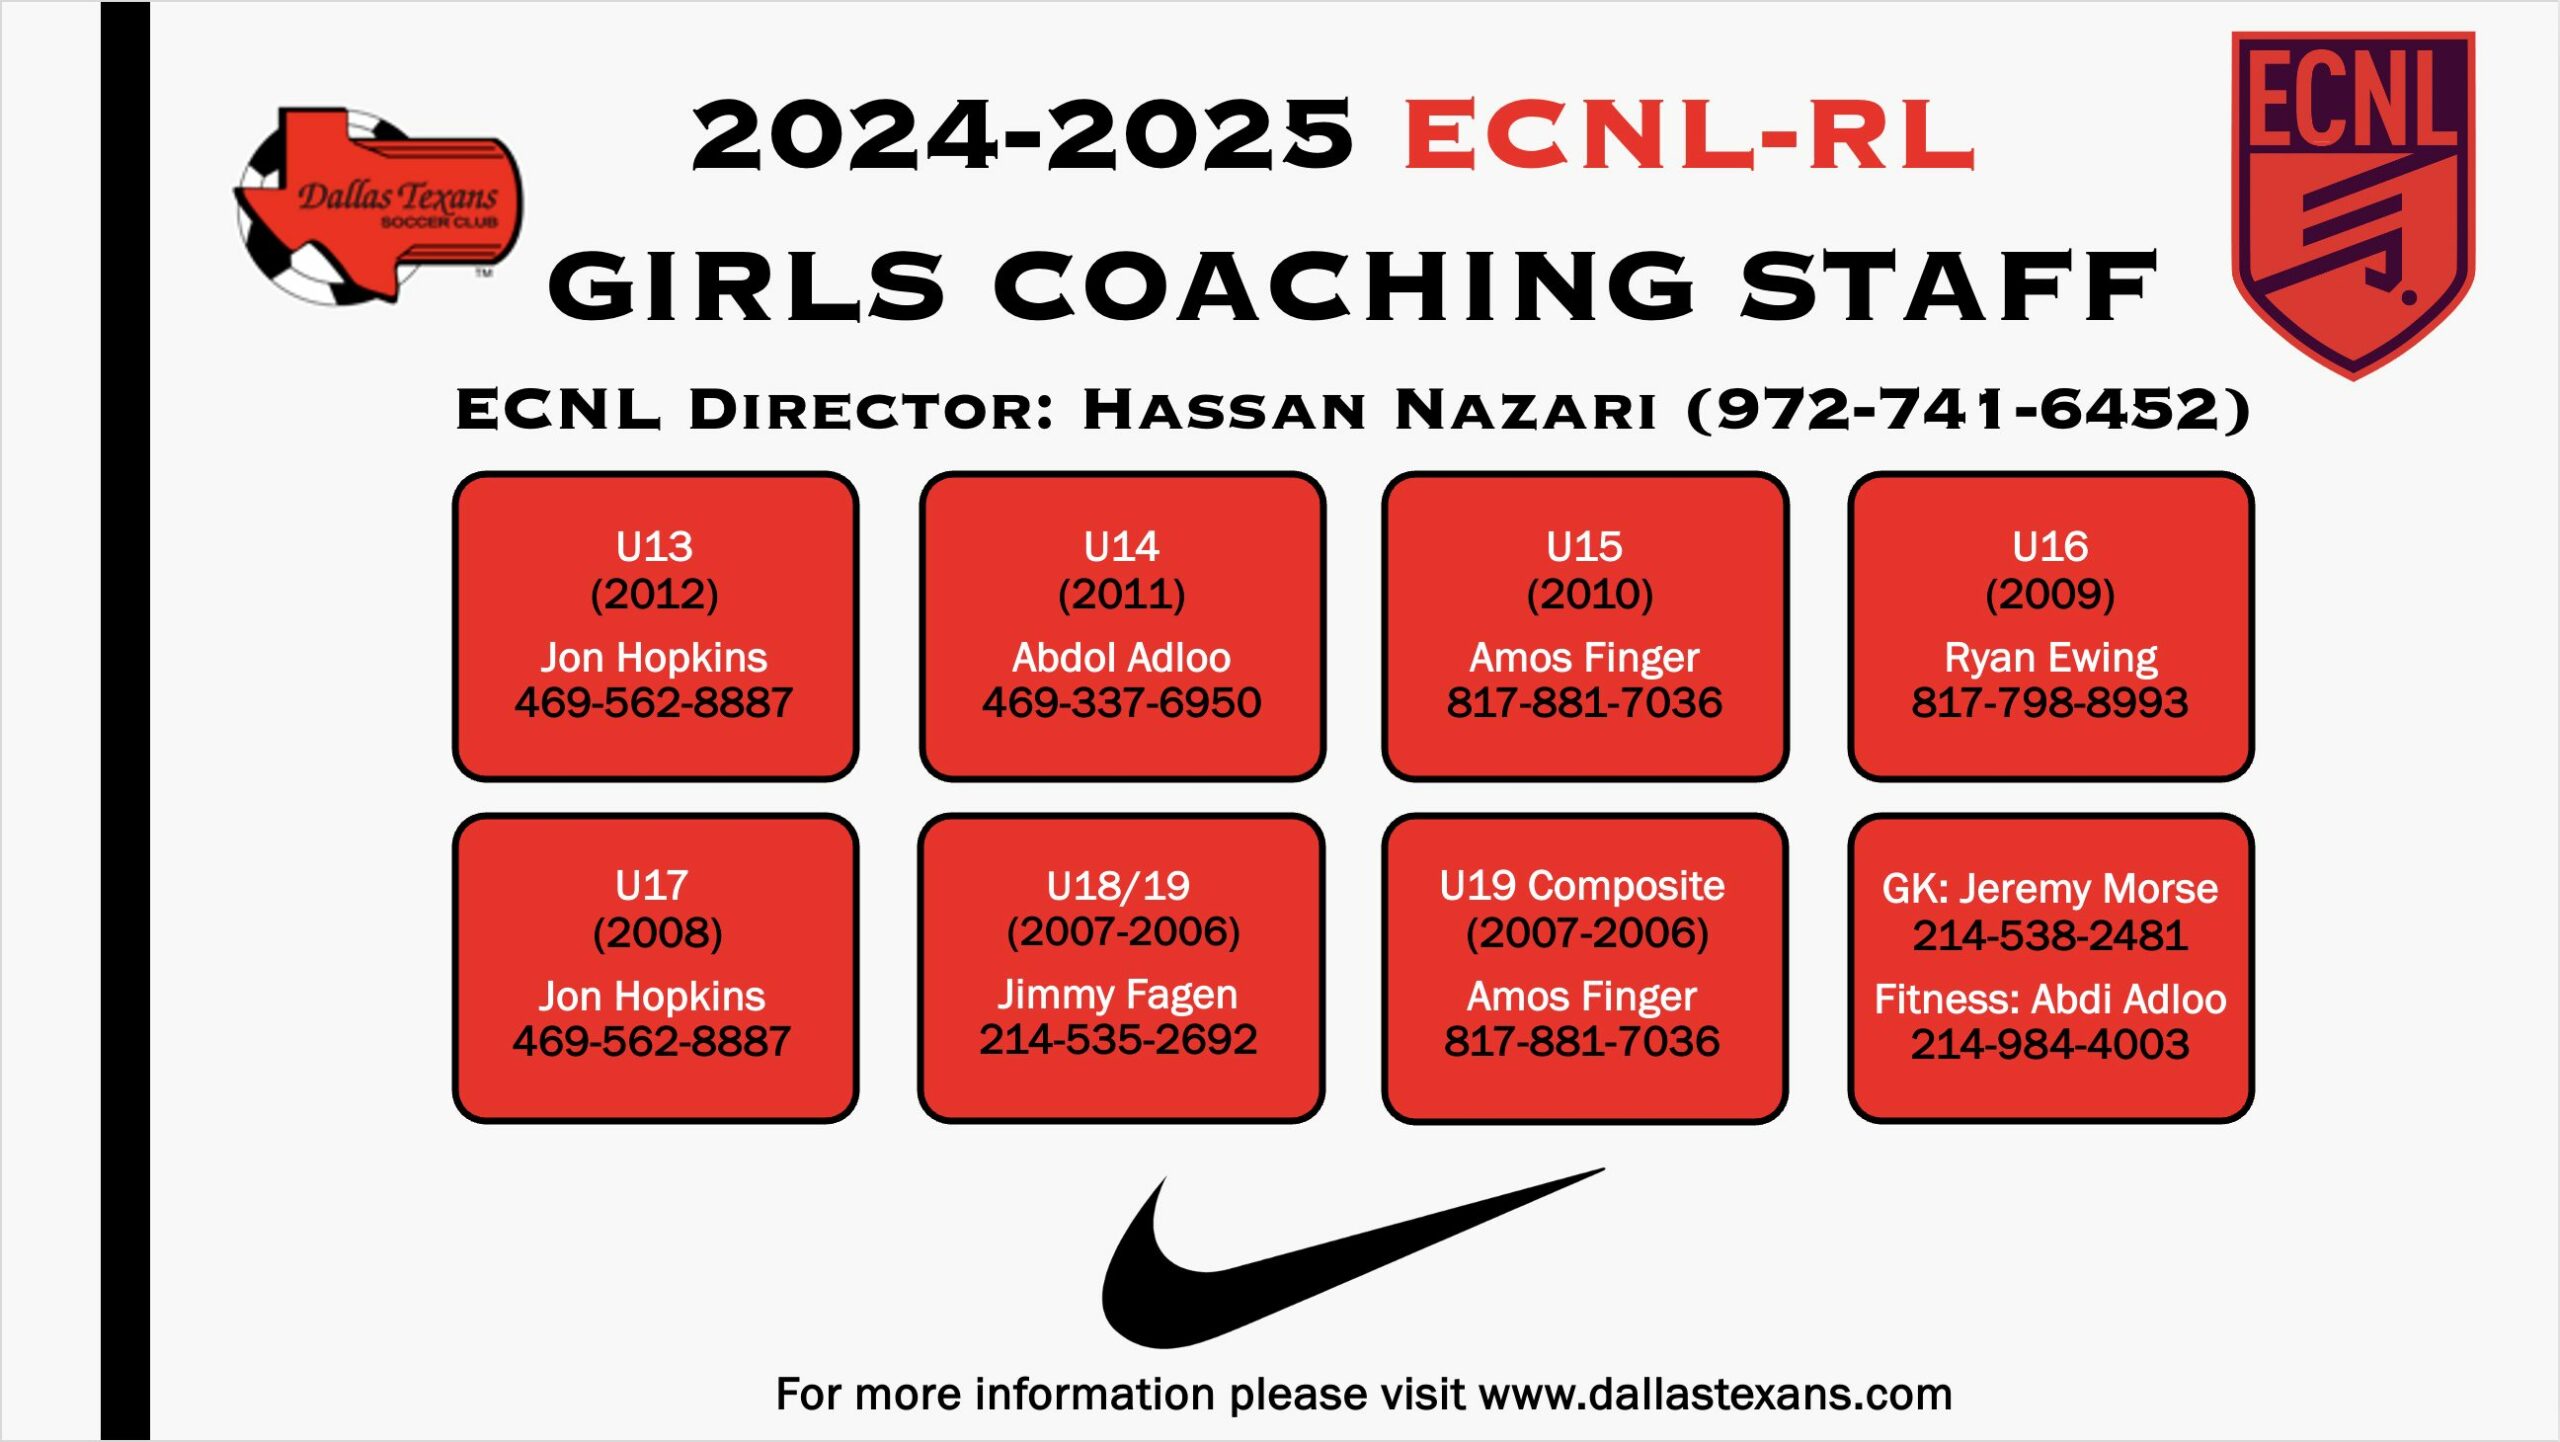 Girls ECNL-RL